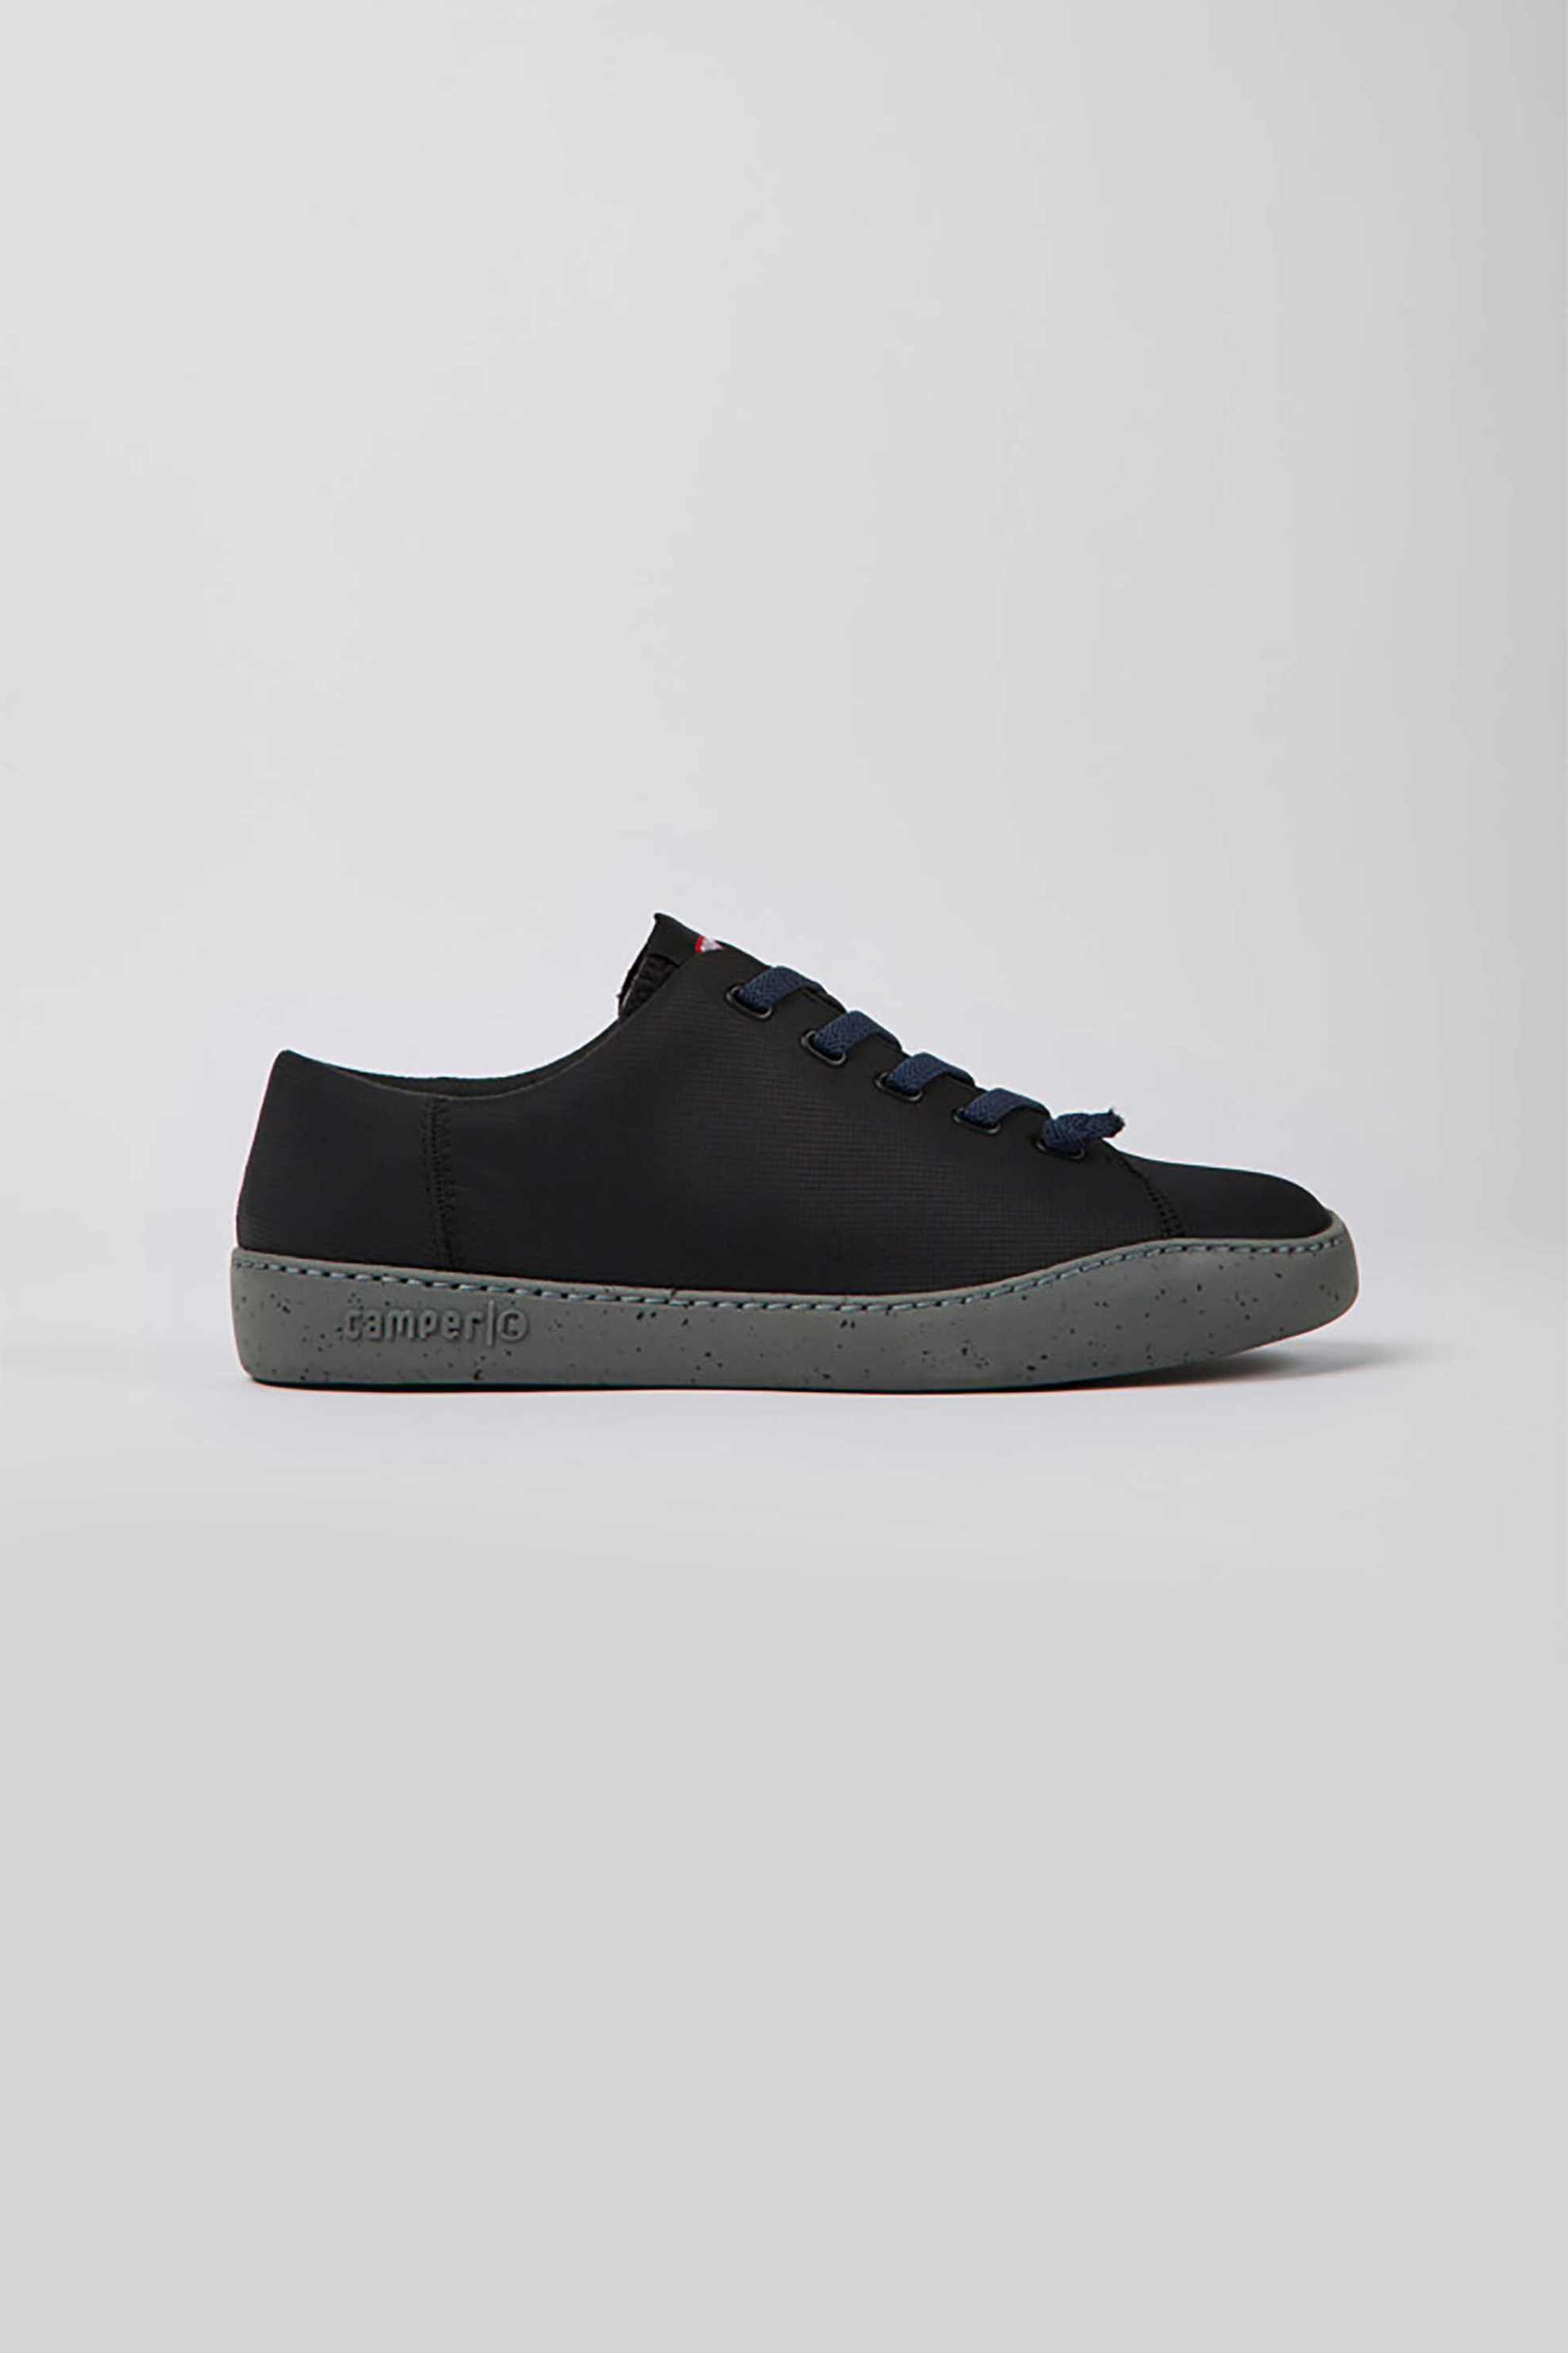 Ανδρική Μόδα > Ανδρικά Παπούτσια > Ανδρικά Sneakers Camper ανδρικά παπούτσια με ελαστικά contrast κορδόνια "Peu Touring" - K100881-001 Μαύρο